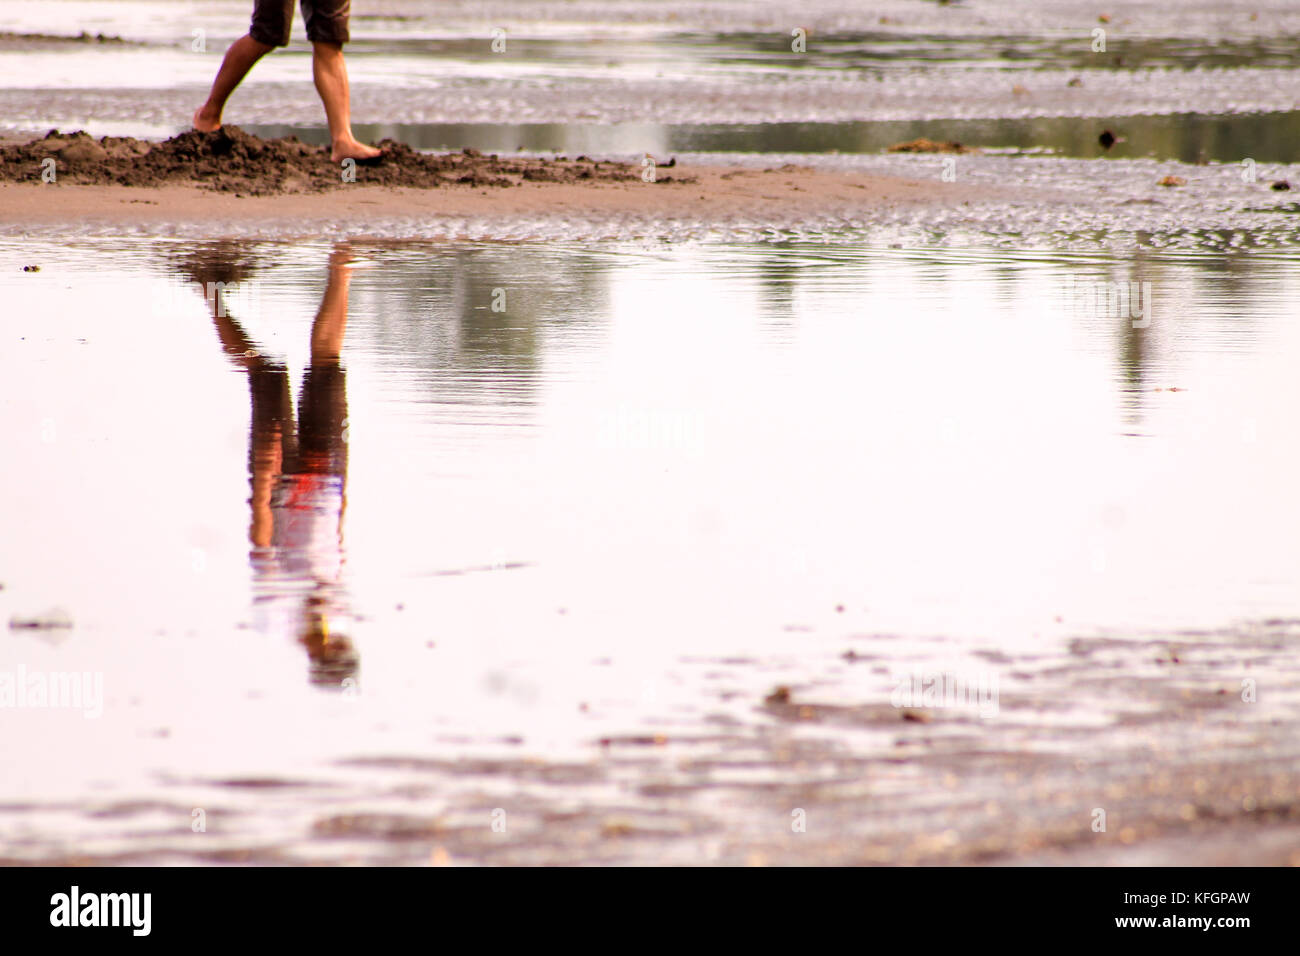 Réflexion d'un homme marchant seul sur une surface d'eau qui montre le concept de distanciation sociale et d'isolement de soi en raison de la pandémie de covid-19 Banque D'Images